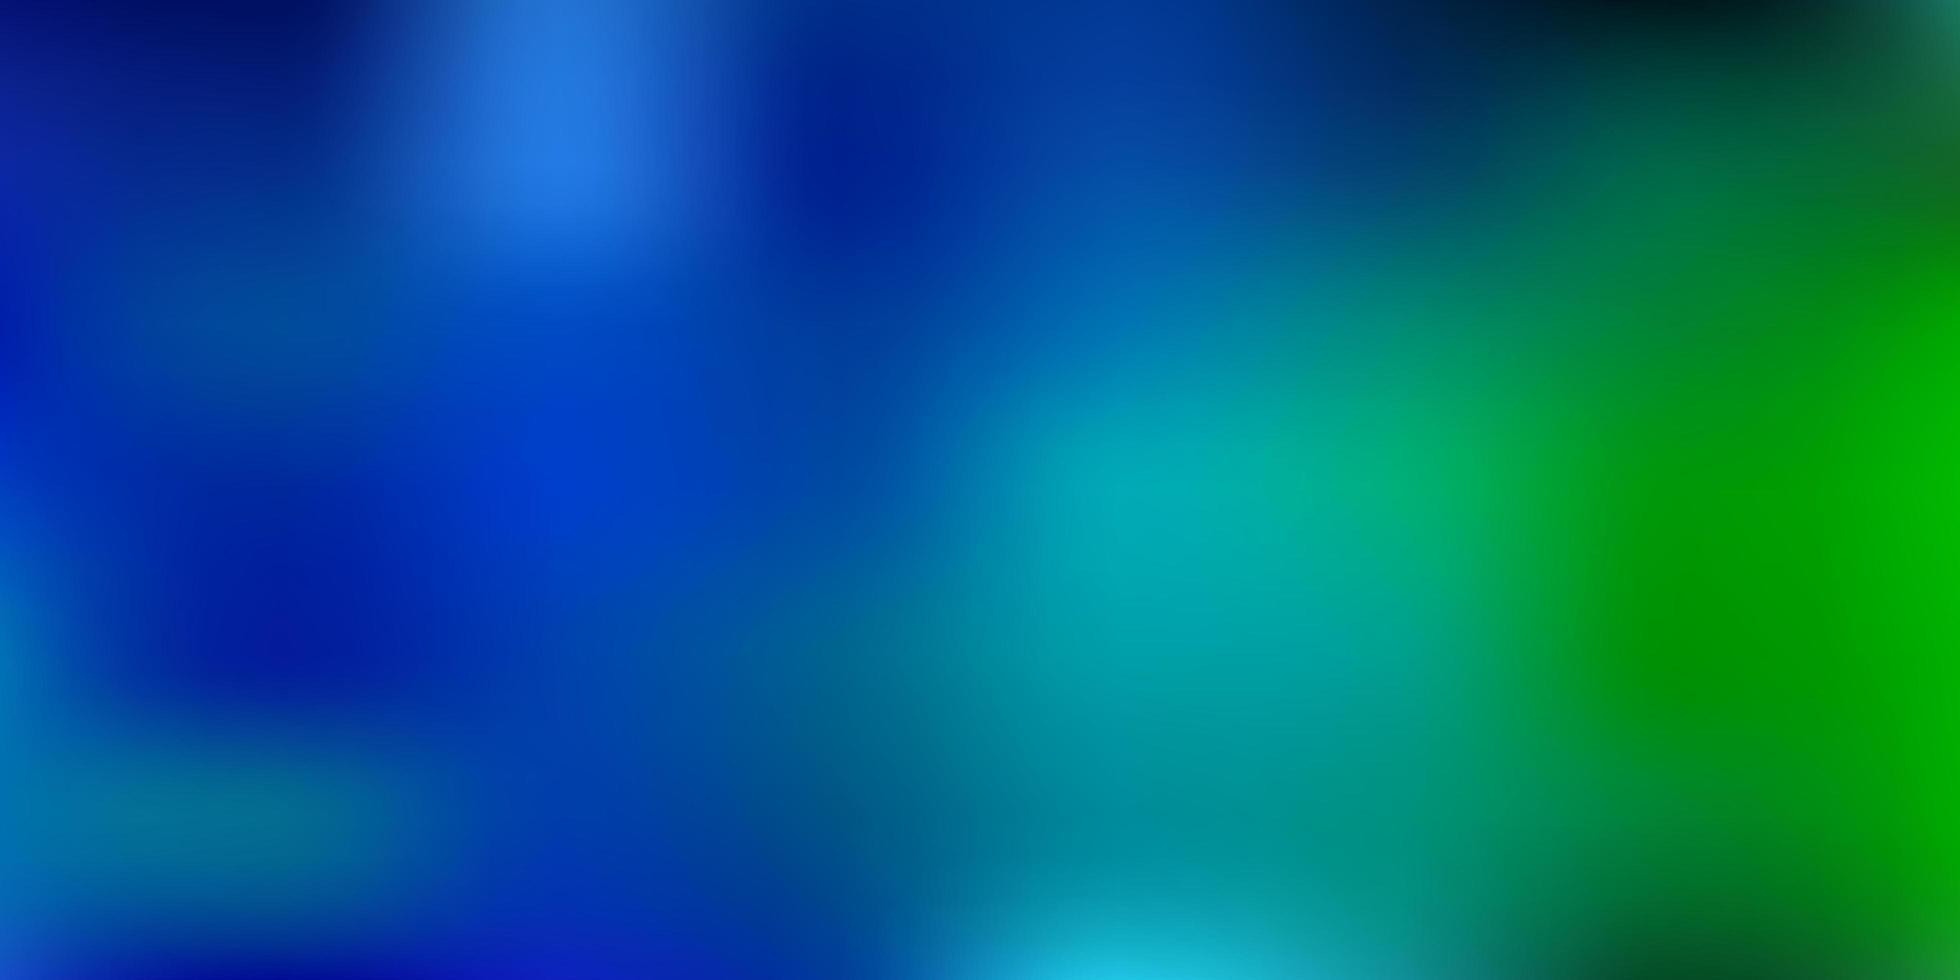 Light blue green vector abstract blur pattern